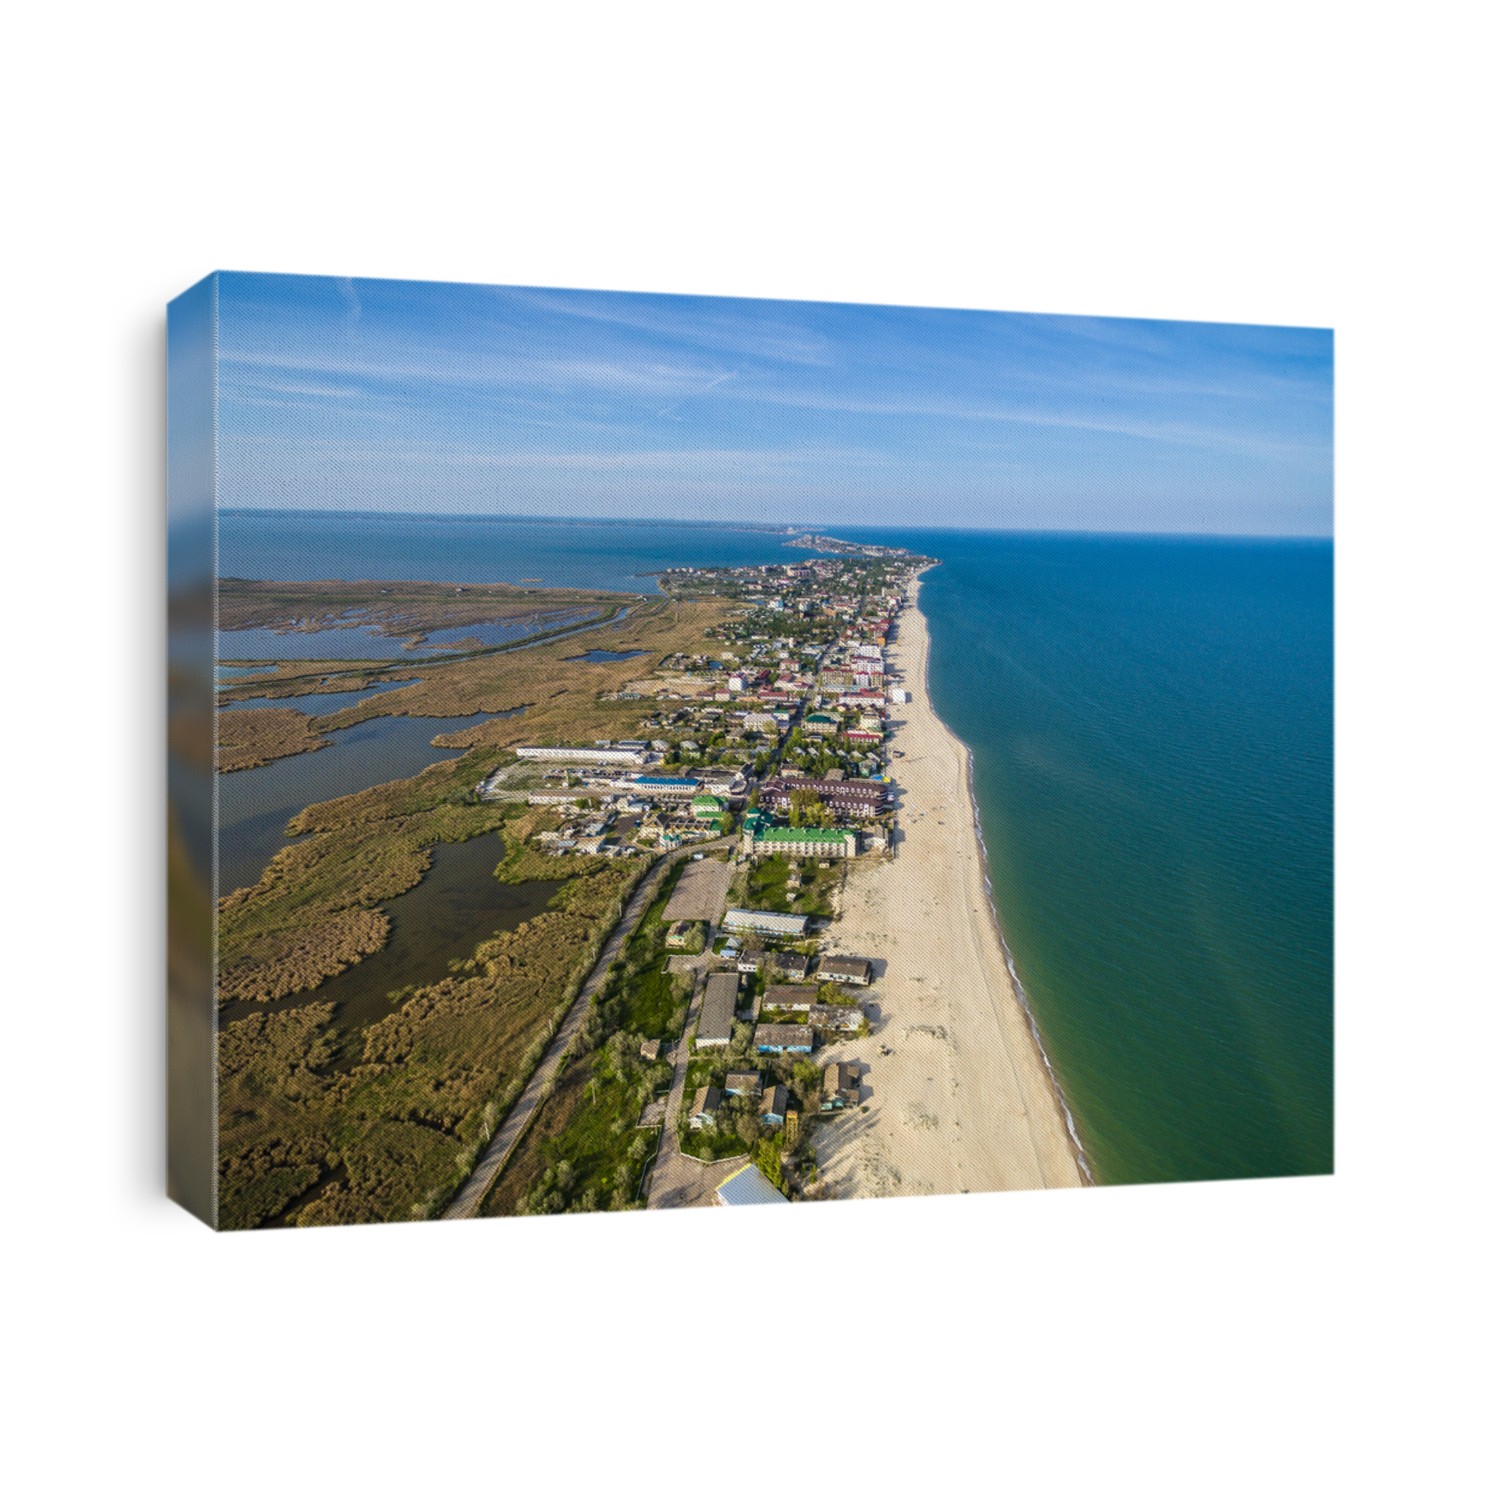 view on Bay coastline in Odessa region, Ukraine, aerial photo